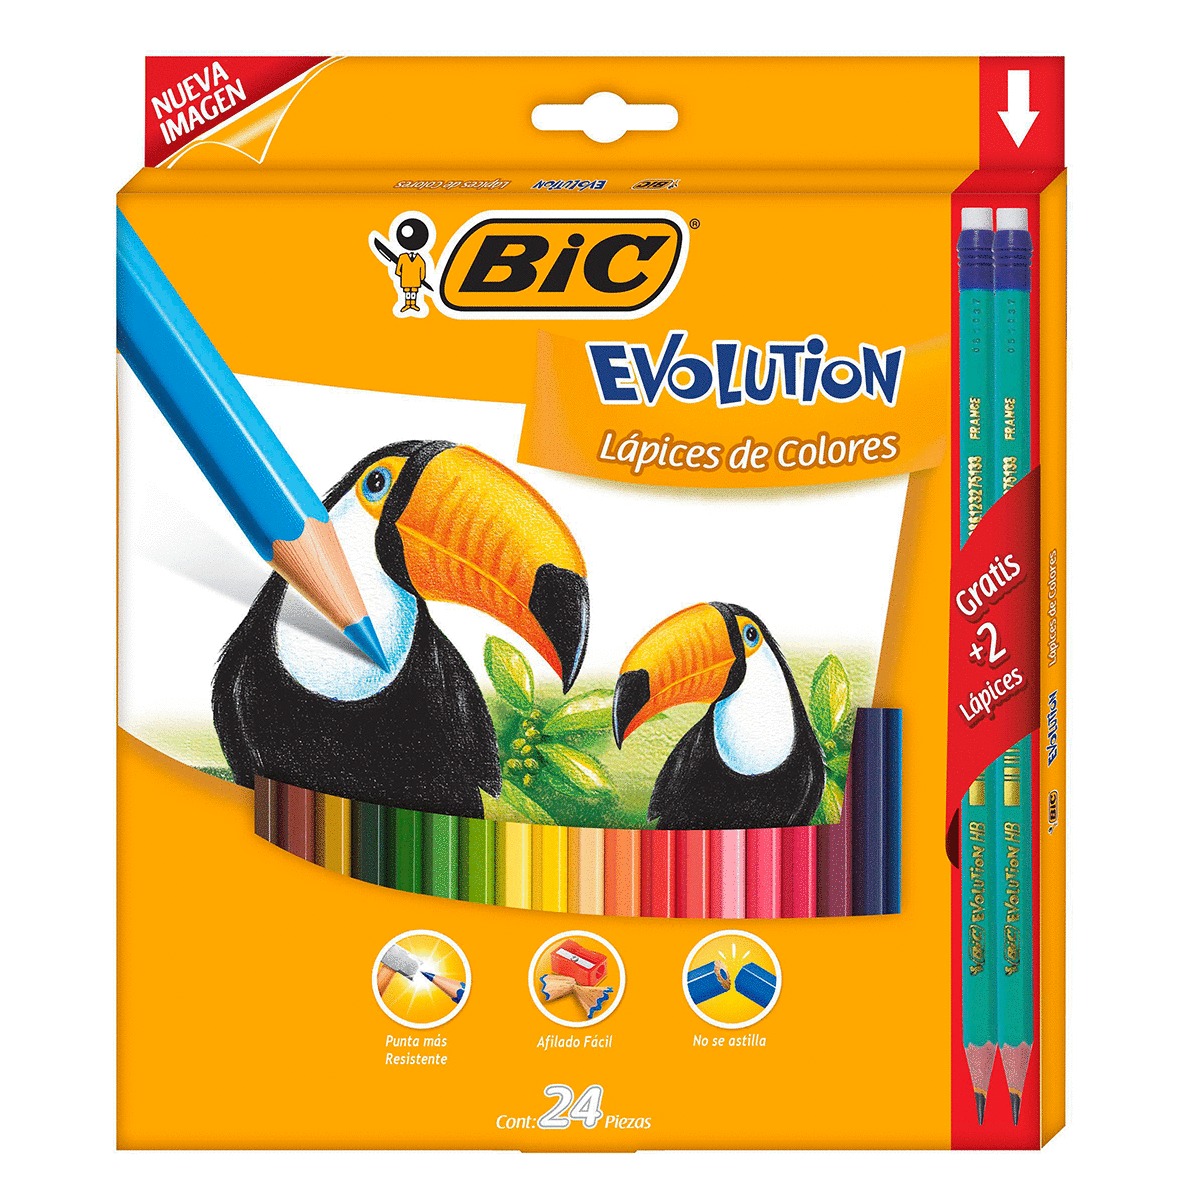 Lápices de Colores Hexagonales Bic Evolution 24 piezas 2 lápices gratis